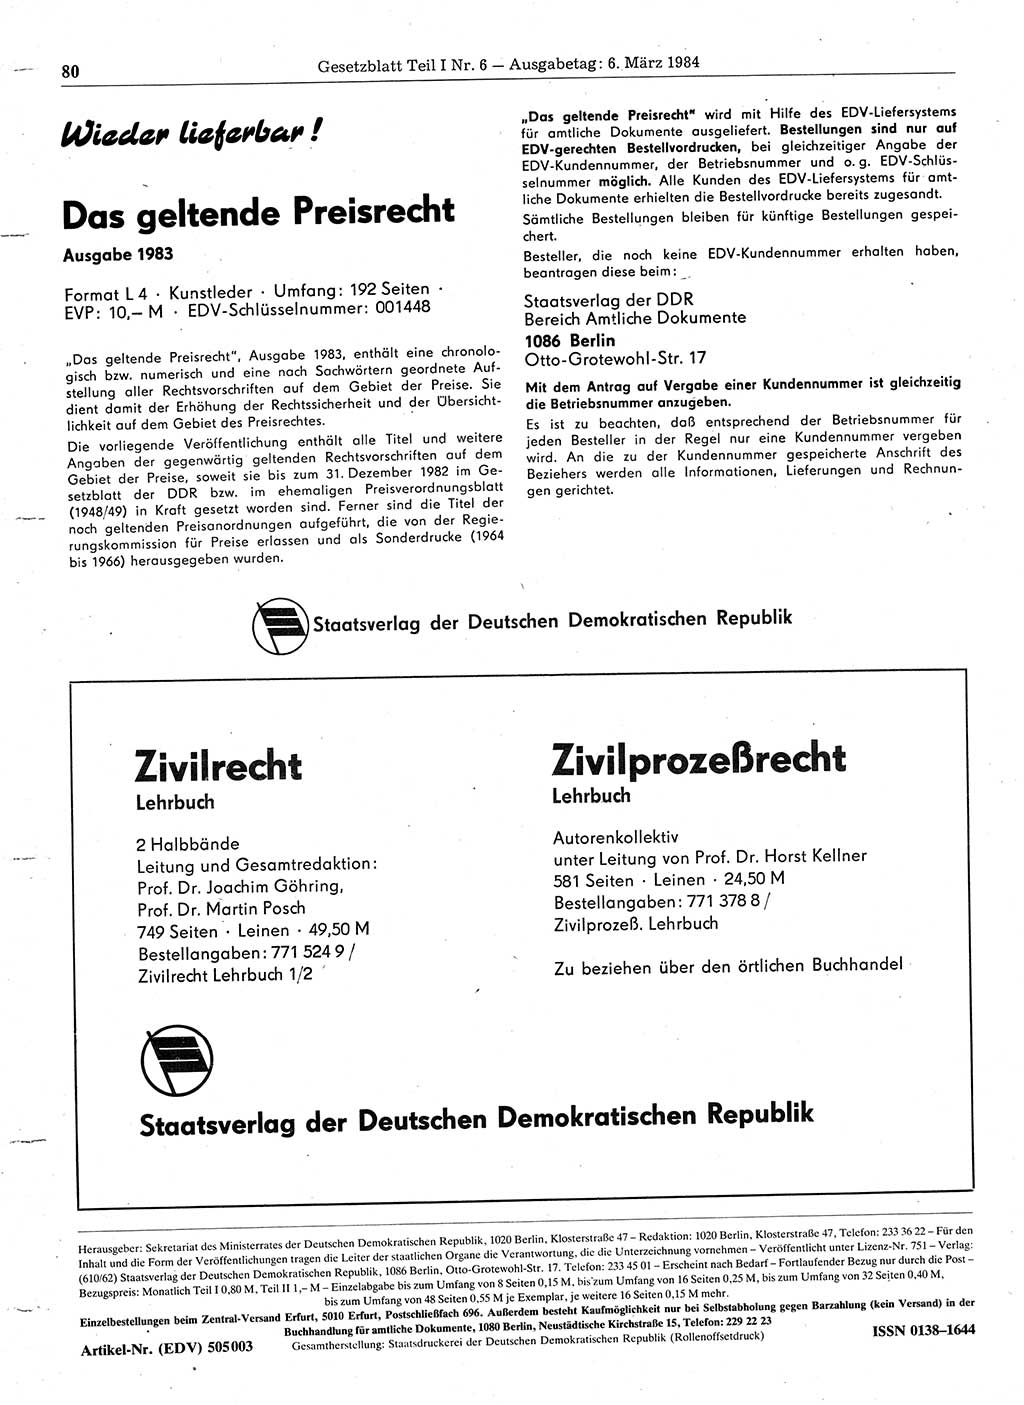 Gesetzblatt (GBl.) der Deutschen Demokratischen Republik (DDR) Teil Ⅰ 1984, Seite 80 (GBl. DDR Ⅰ 1984, S. 80)